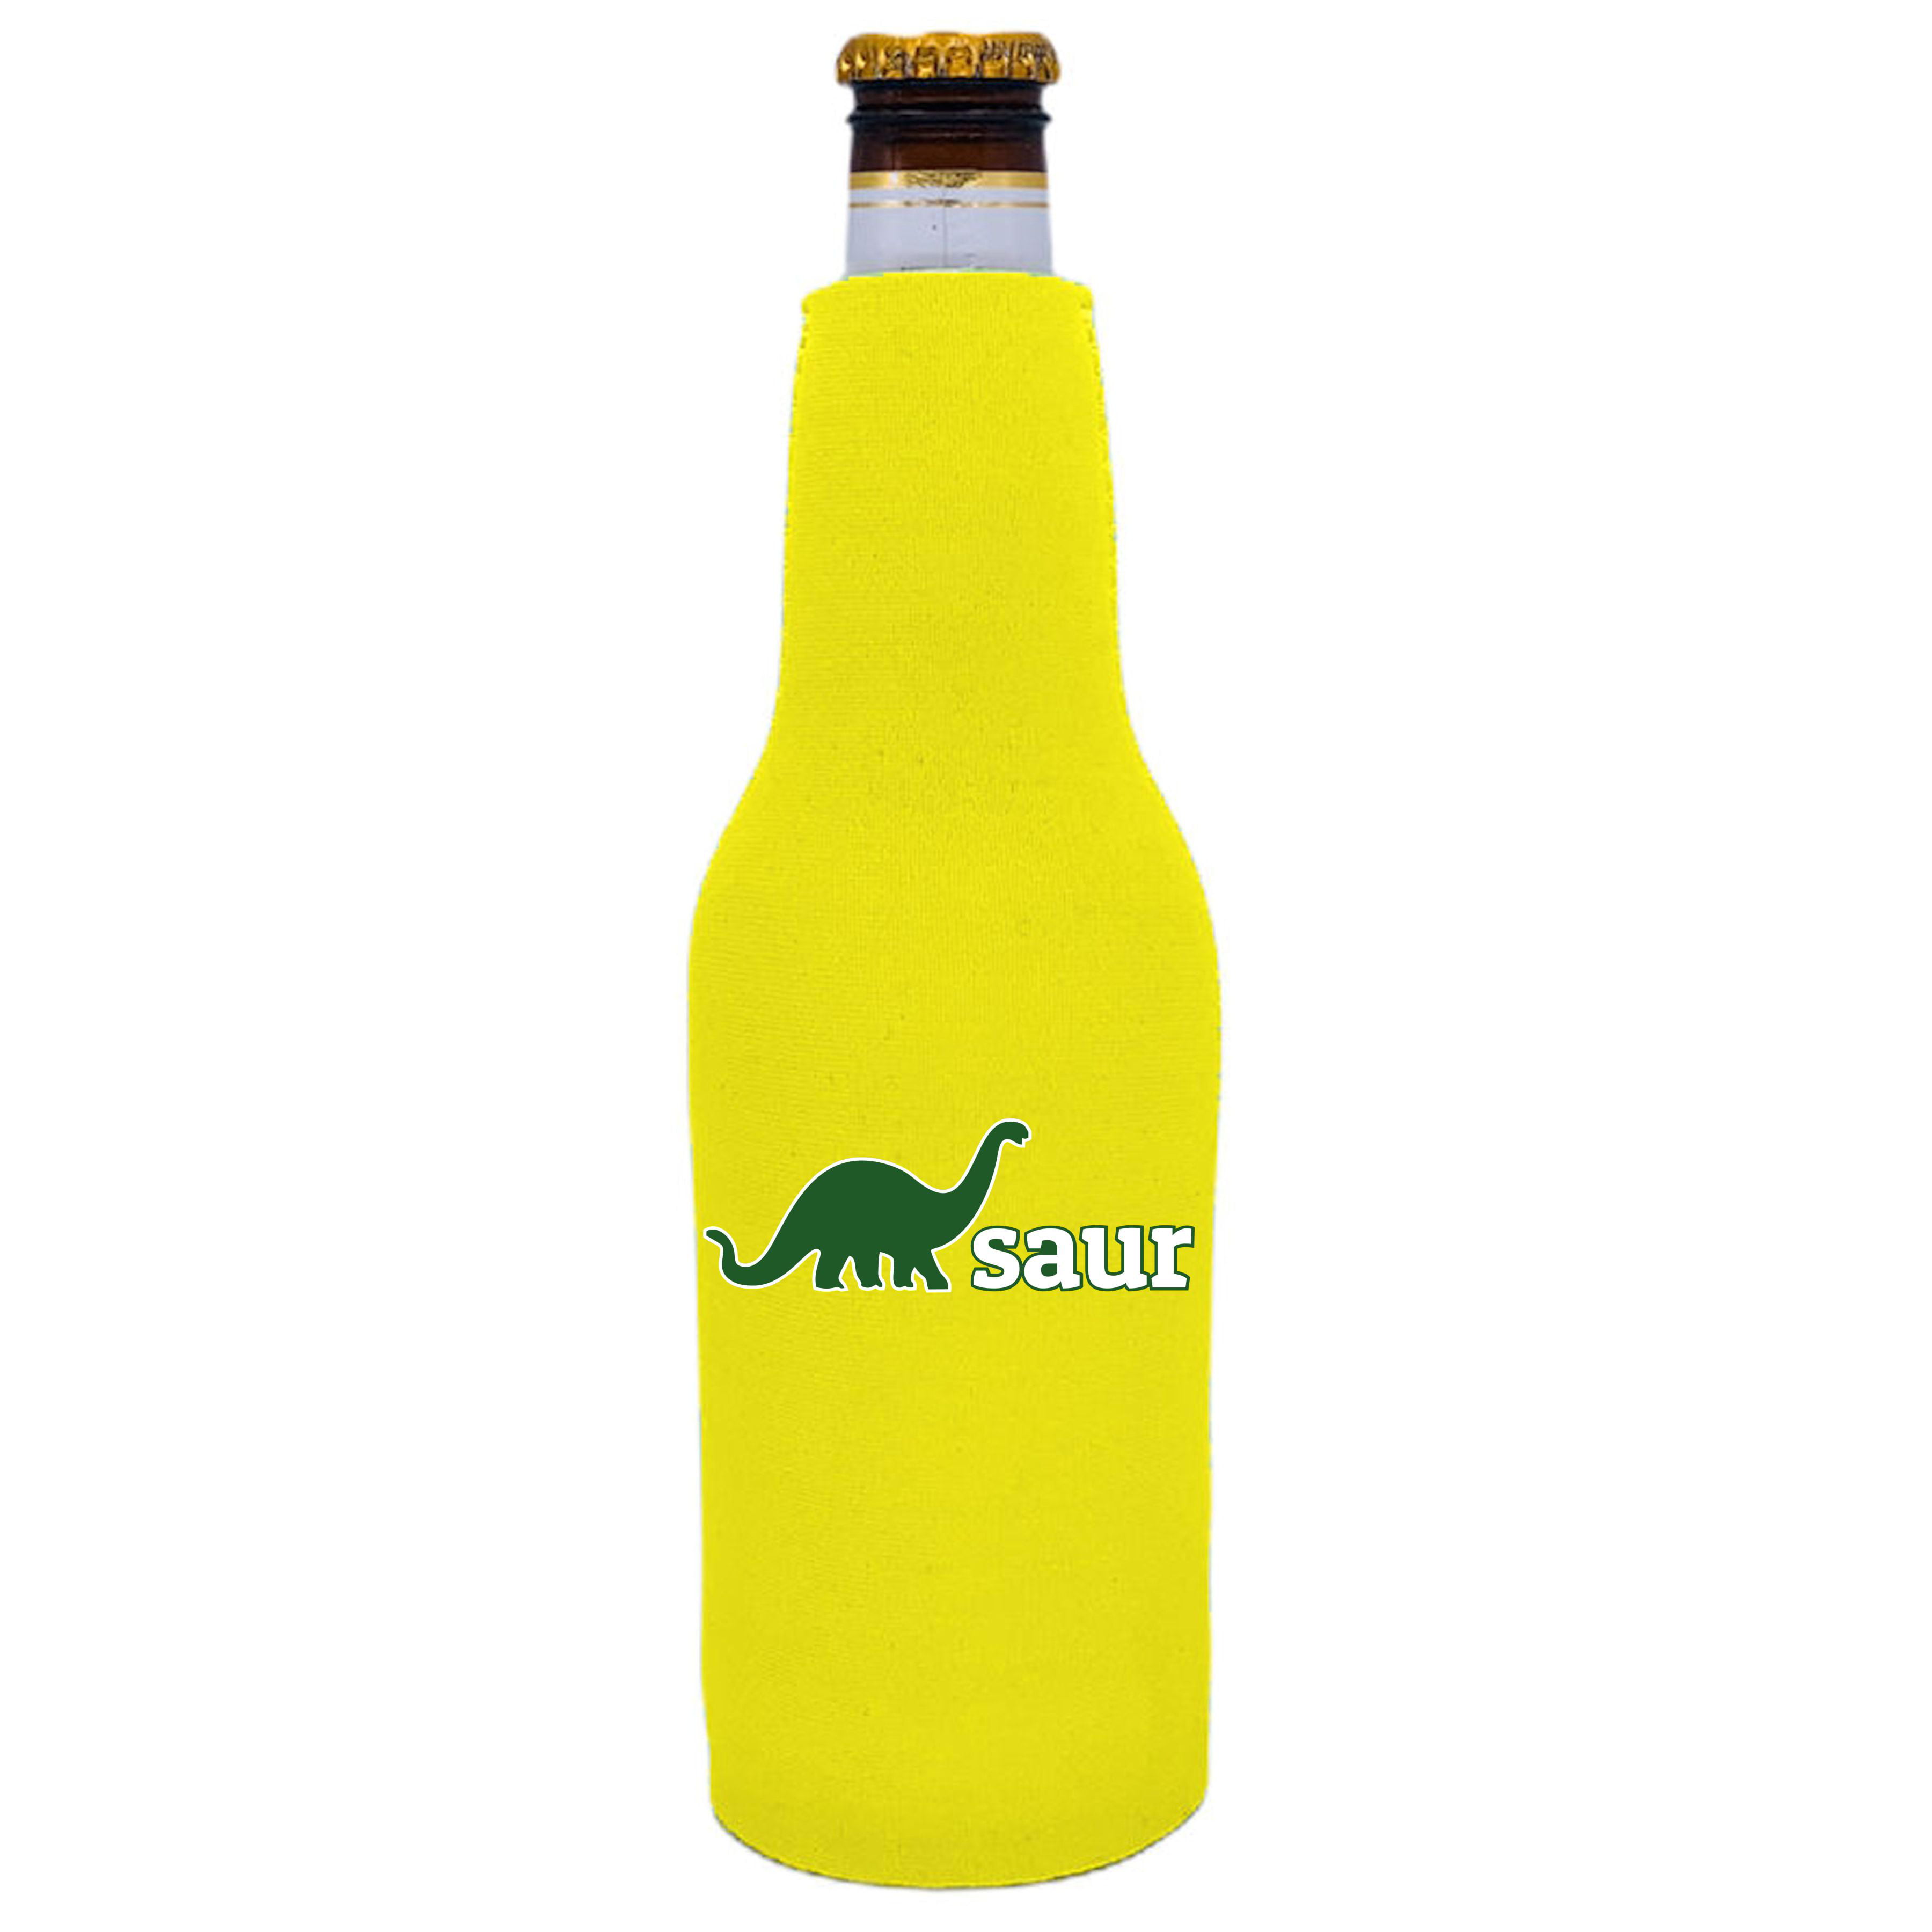 Rijk dans behang Dino-Saur Beer Bottle Coolie (Yellow) - Walmart.com - Walmart.com